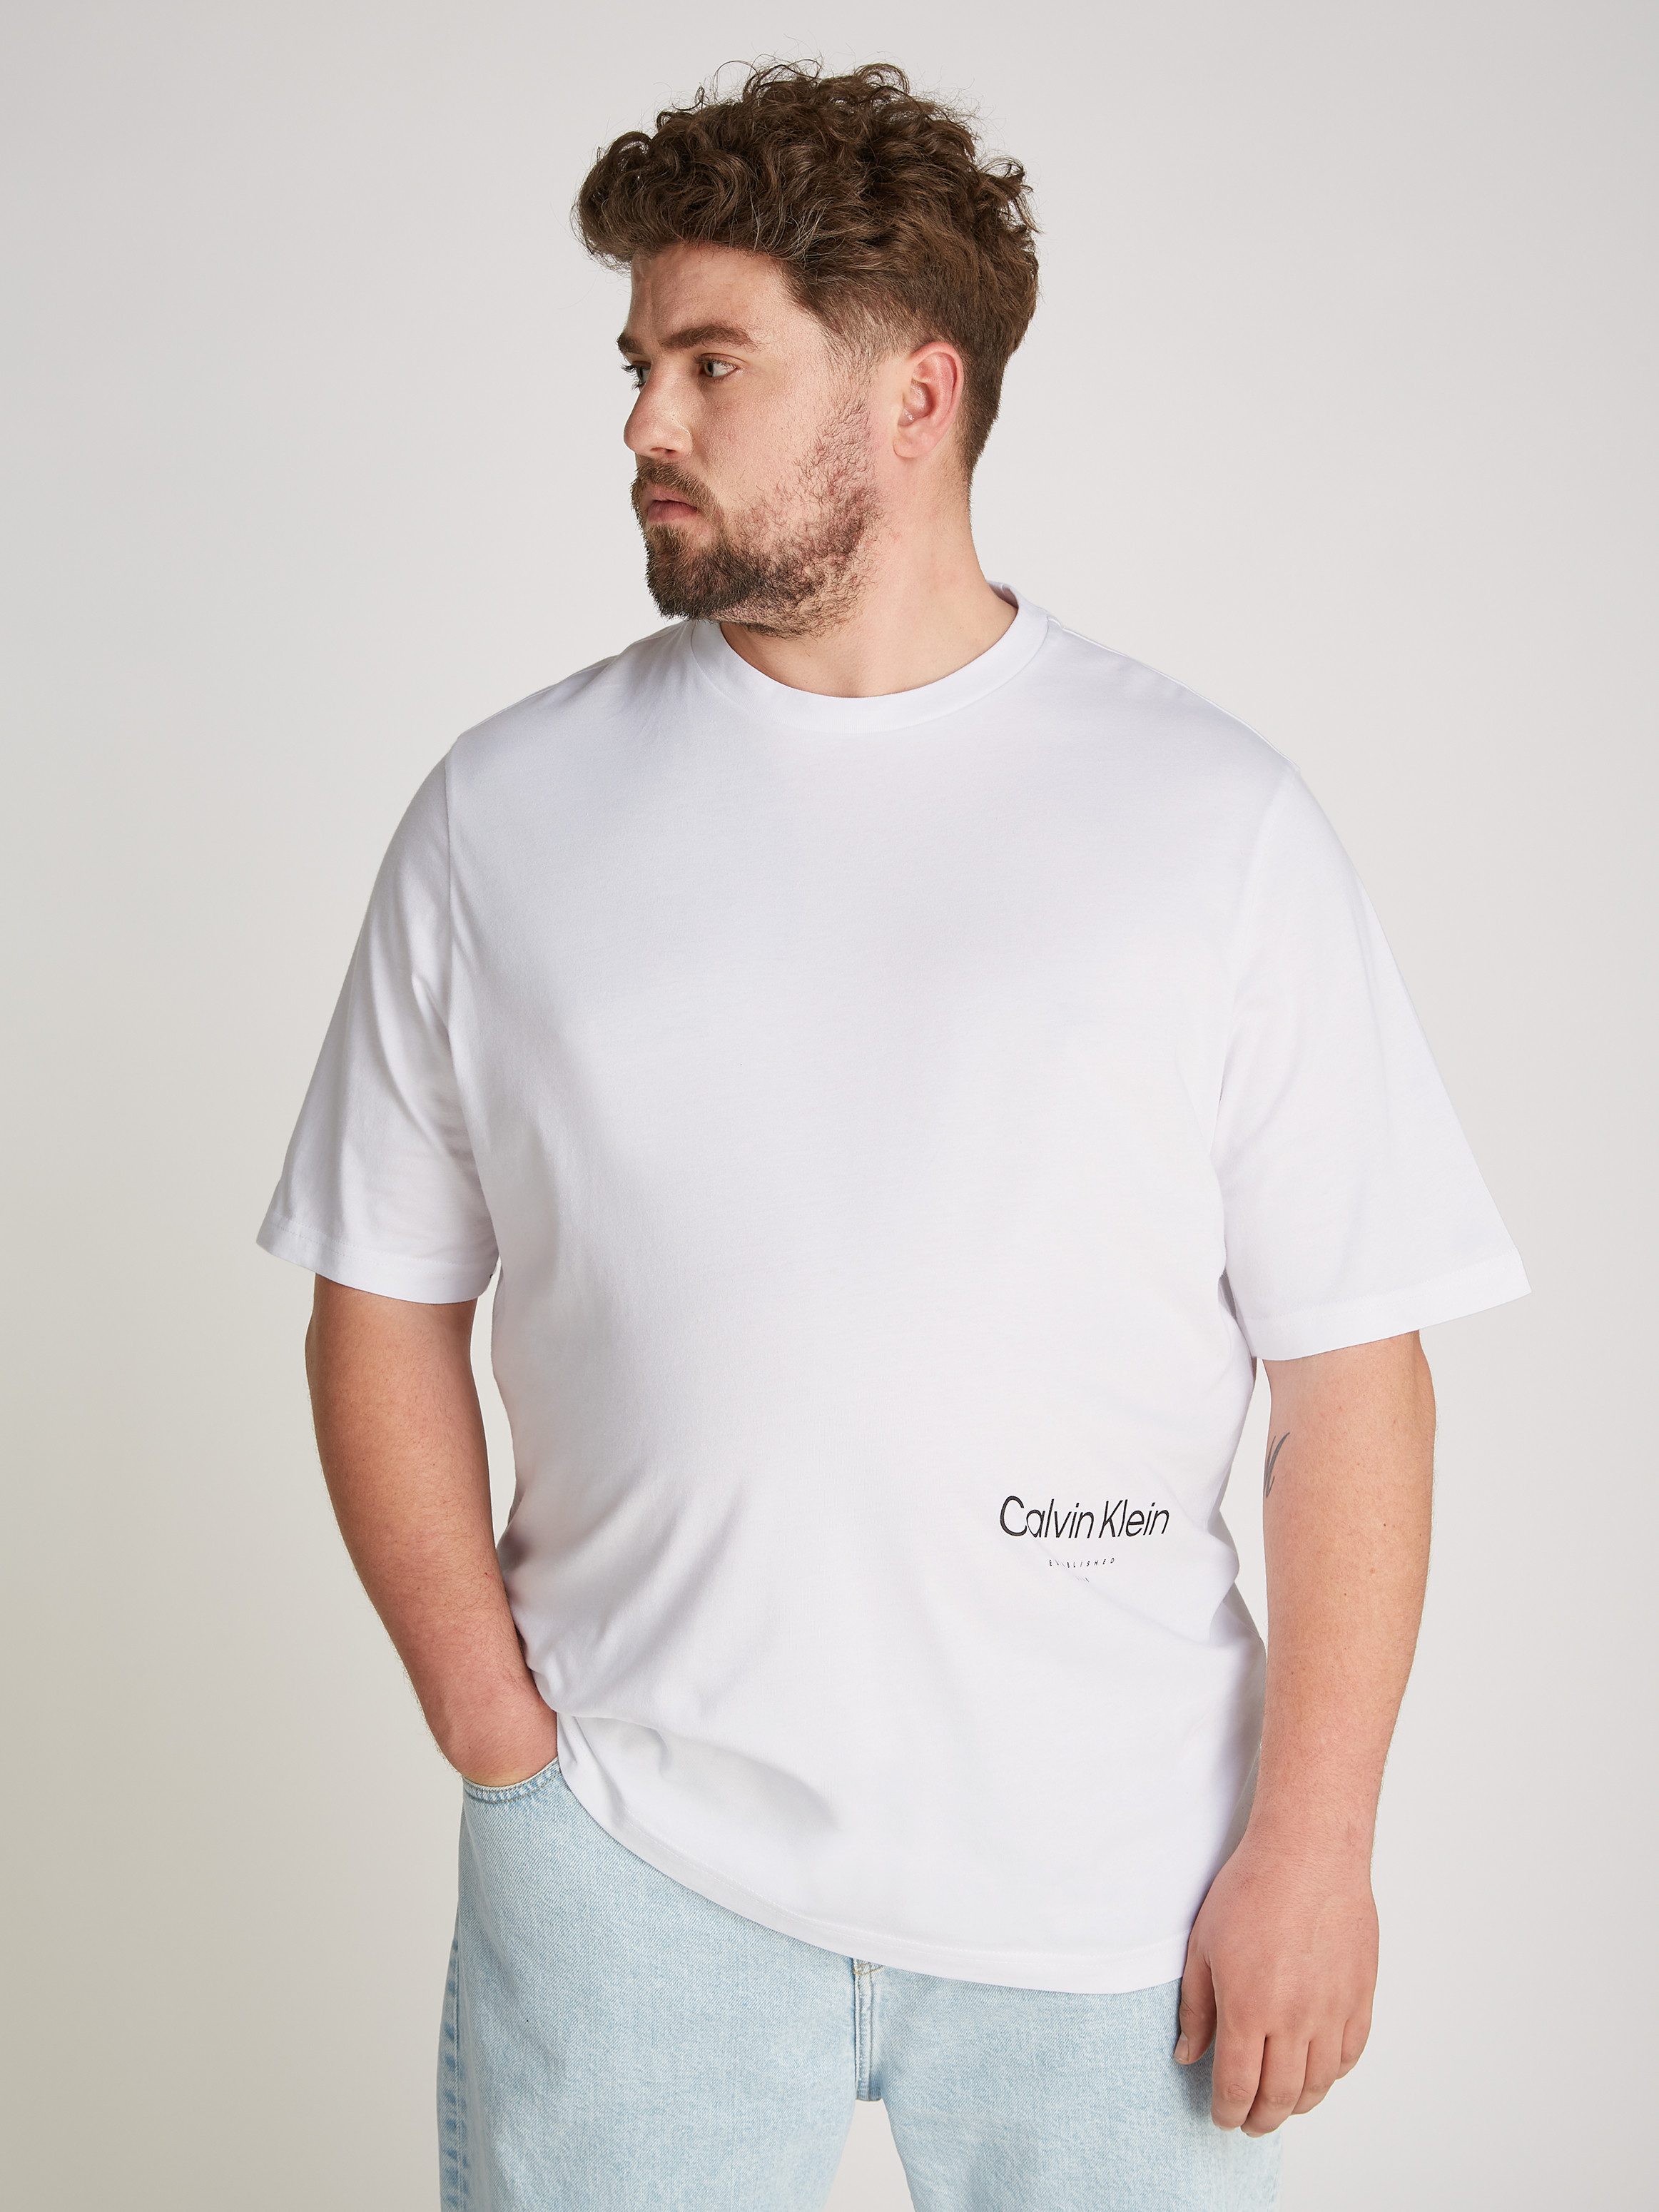 Calvin Klein Big&Tall T-Shirt BT_OFF PLACEMENT LOGO T-SHIRT in großen Größen mit Markenlabel